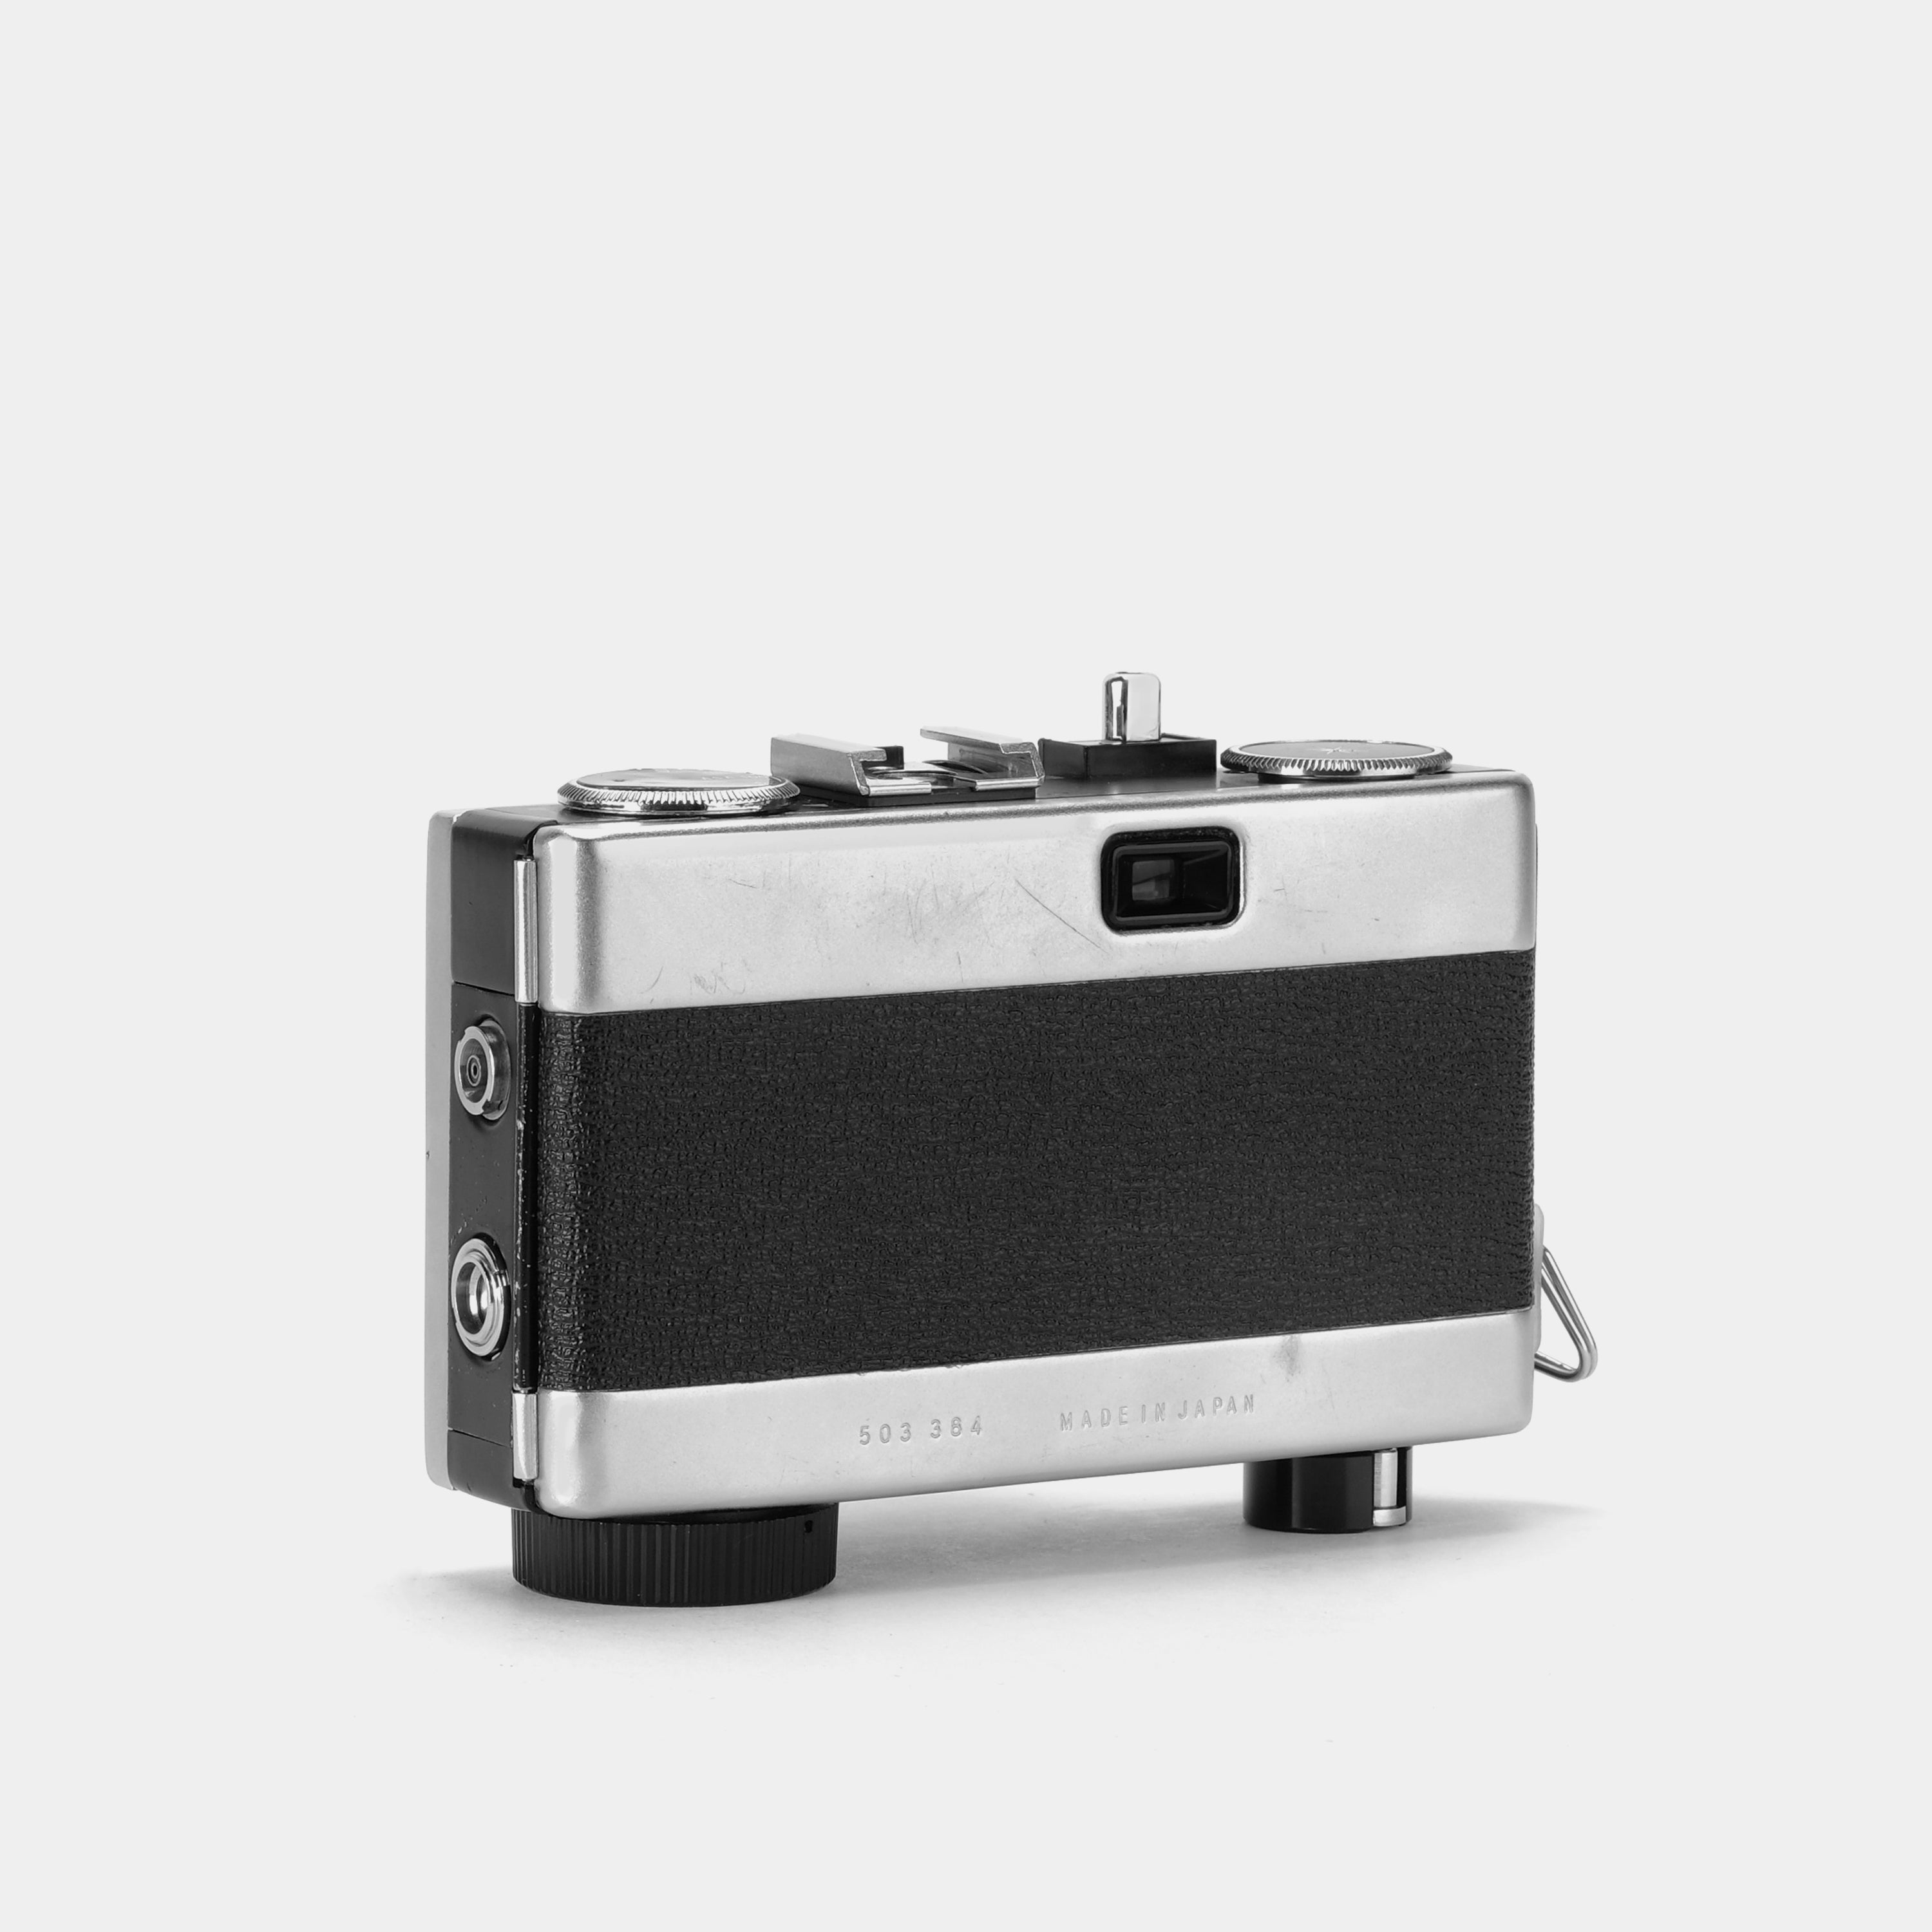 Ricoh Hi-Color 35mm Scale Focus Film Camera & Underwater Case